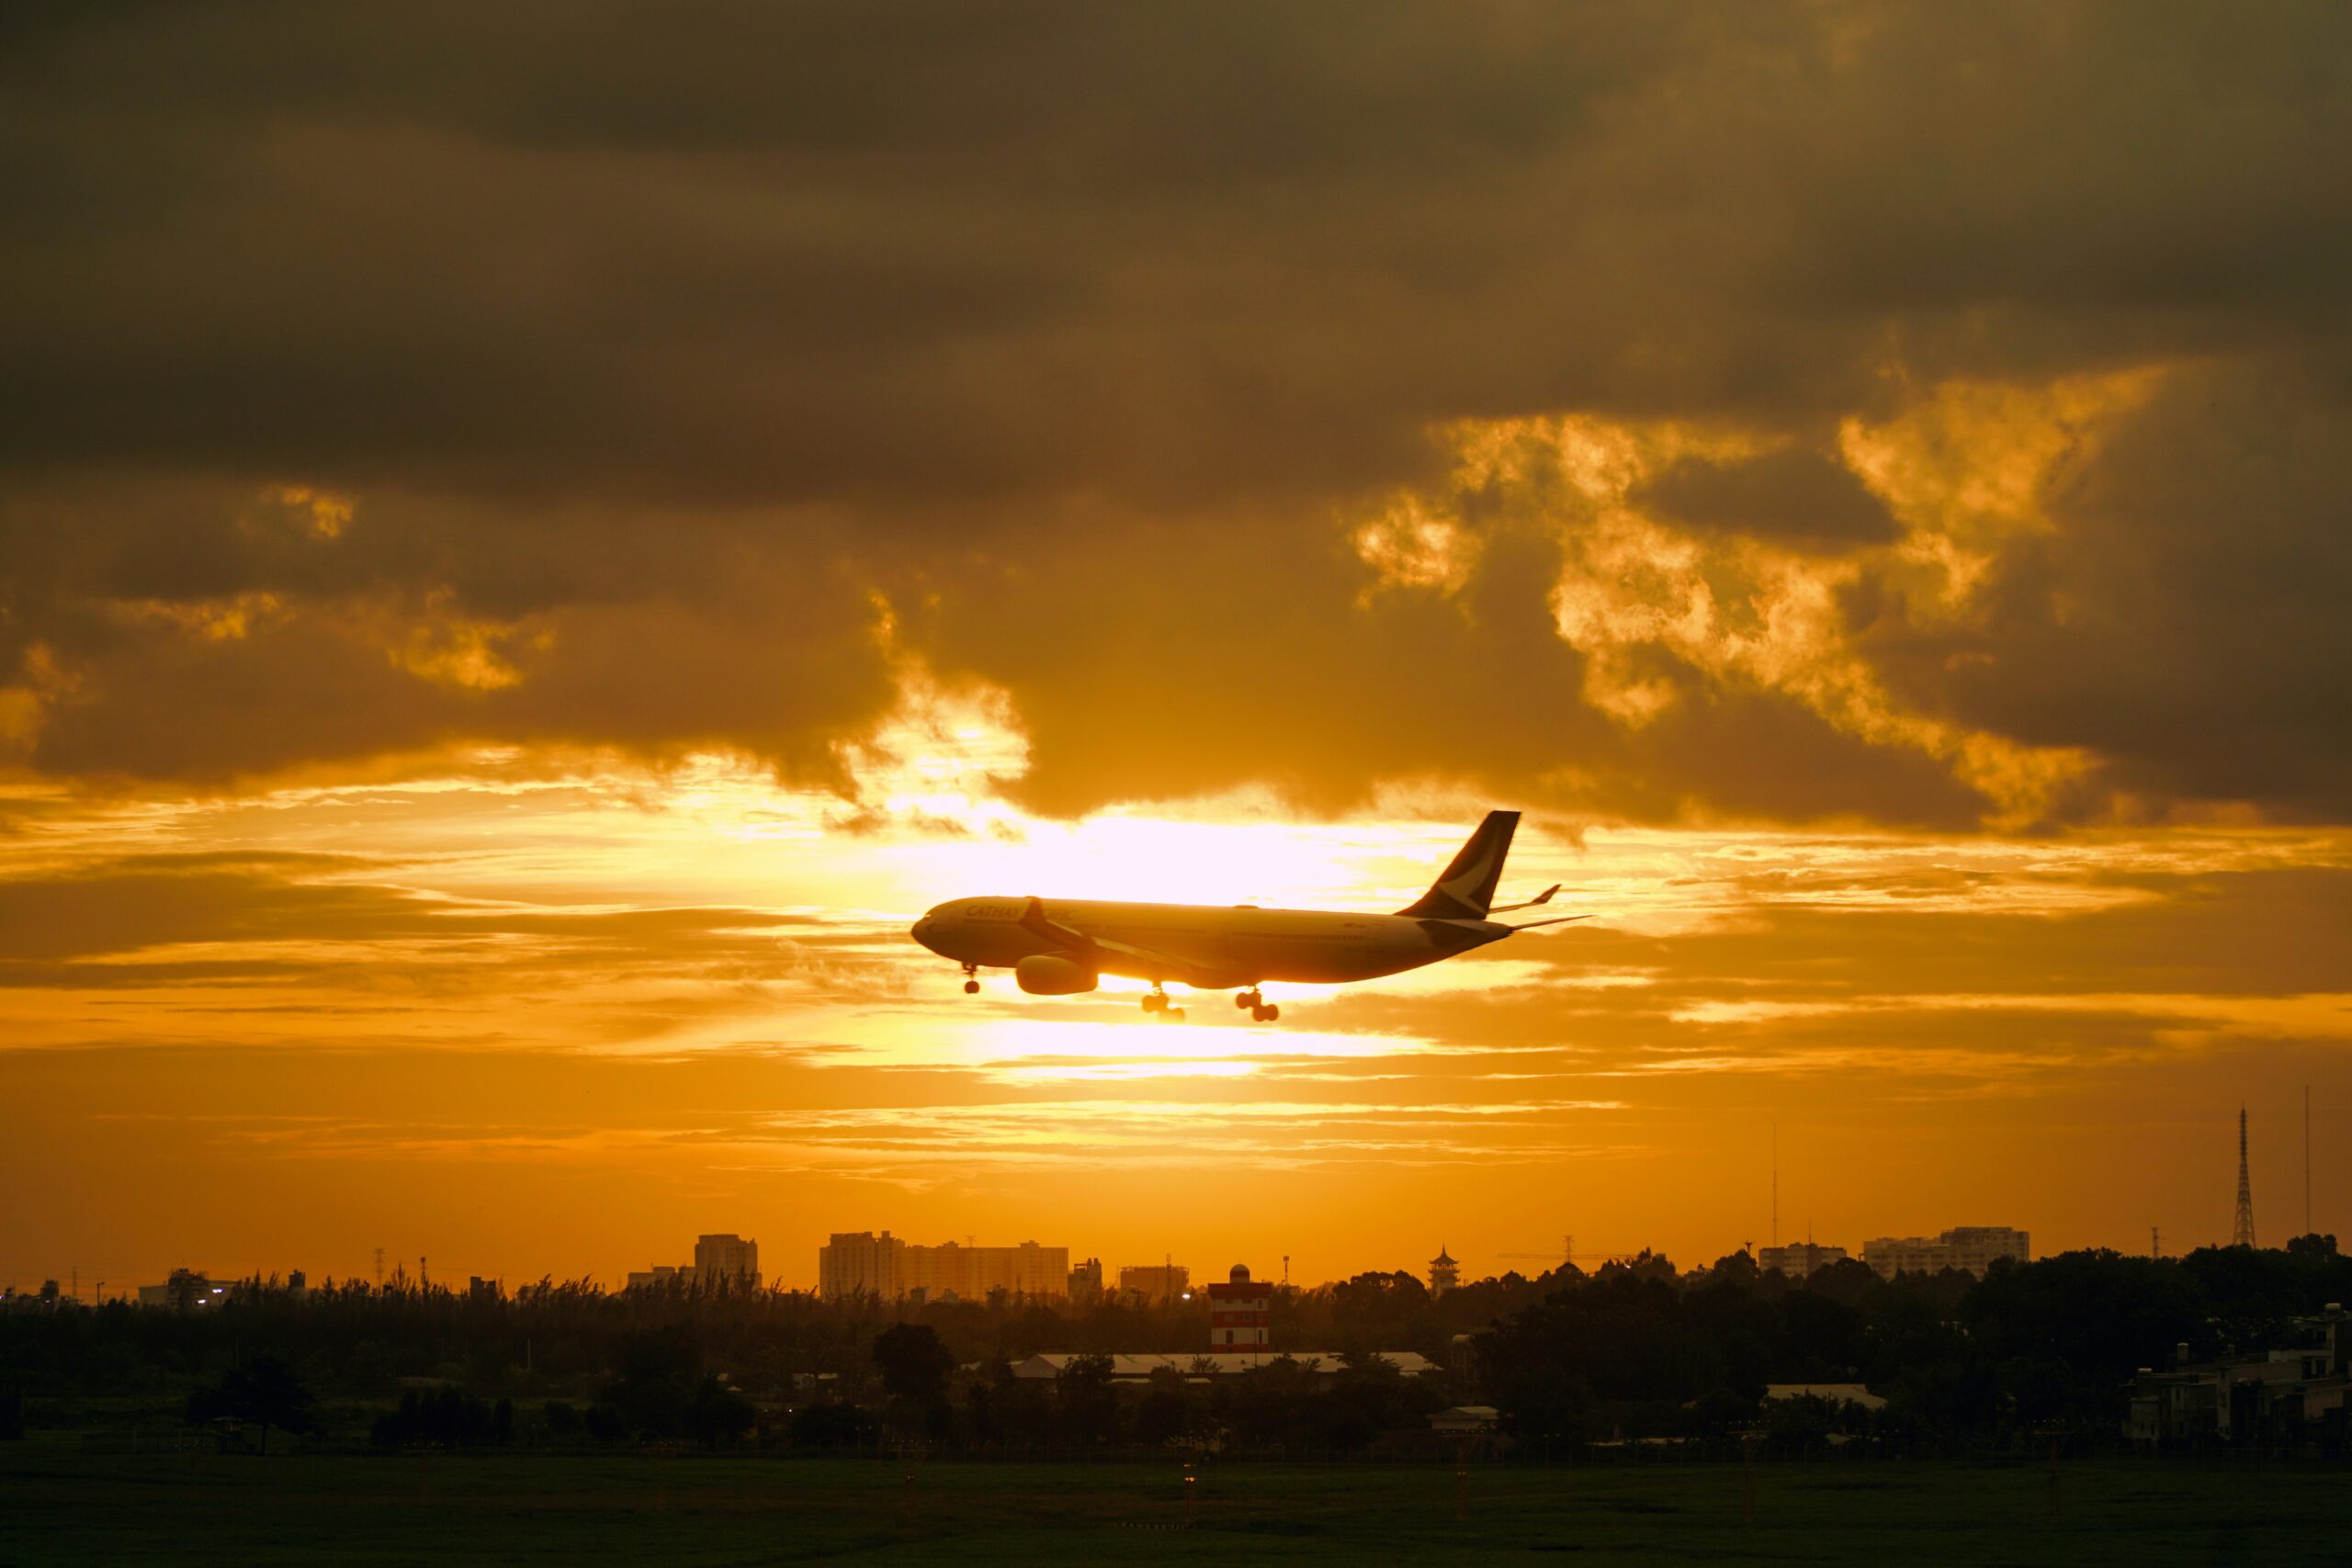 Plane takeoff during sunset